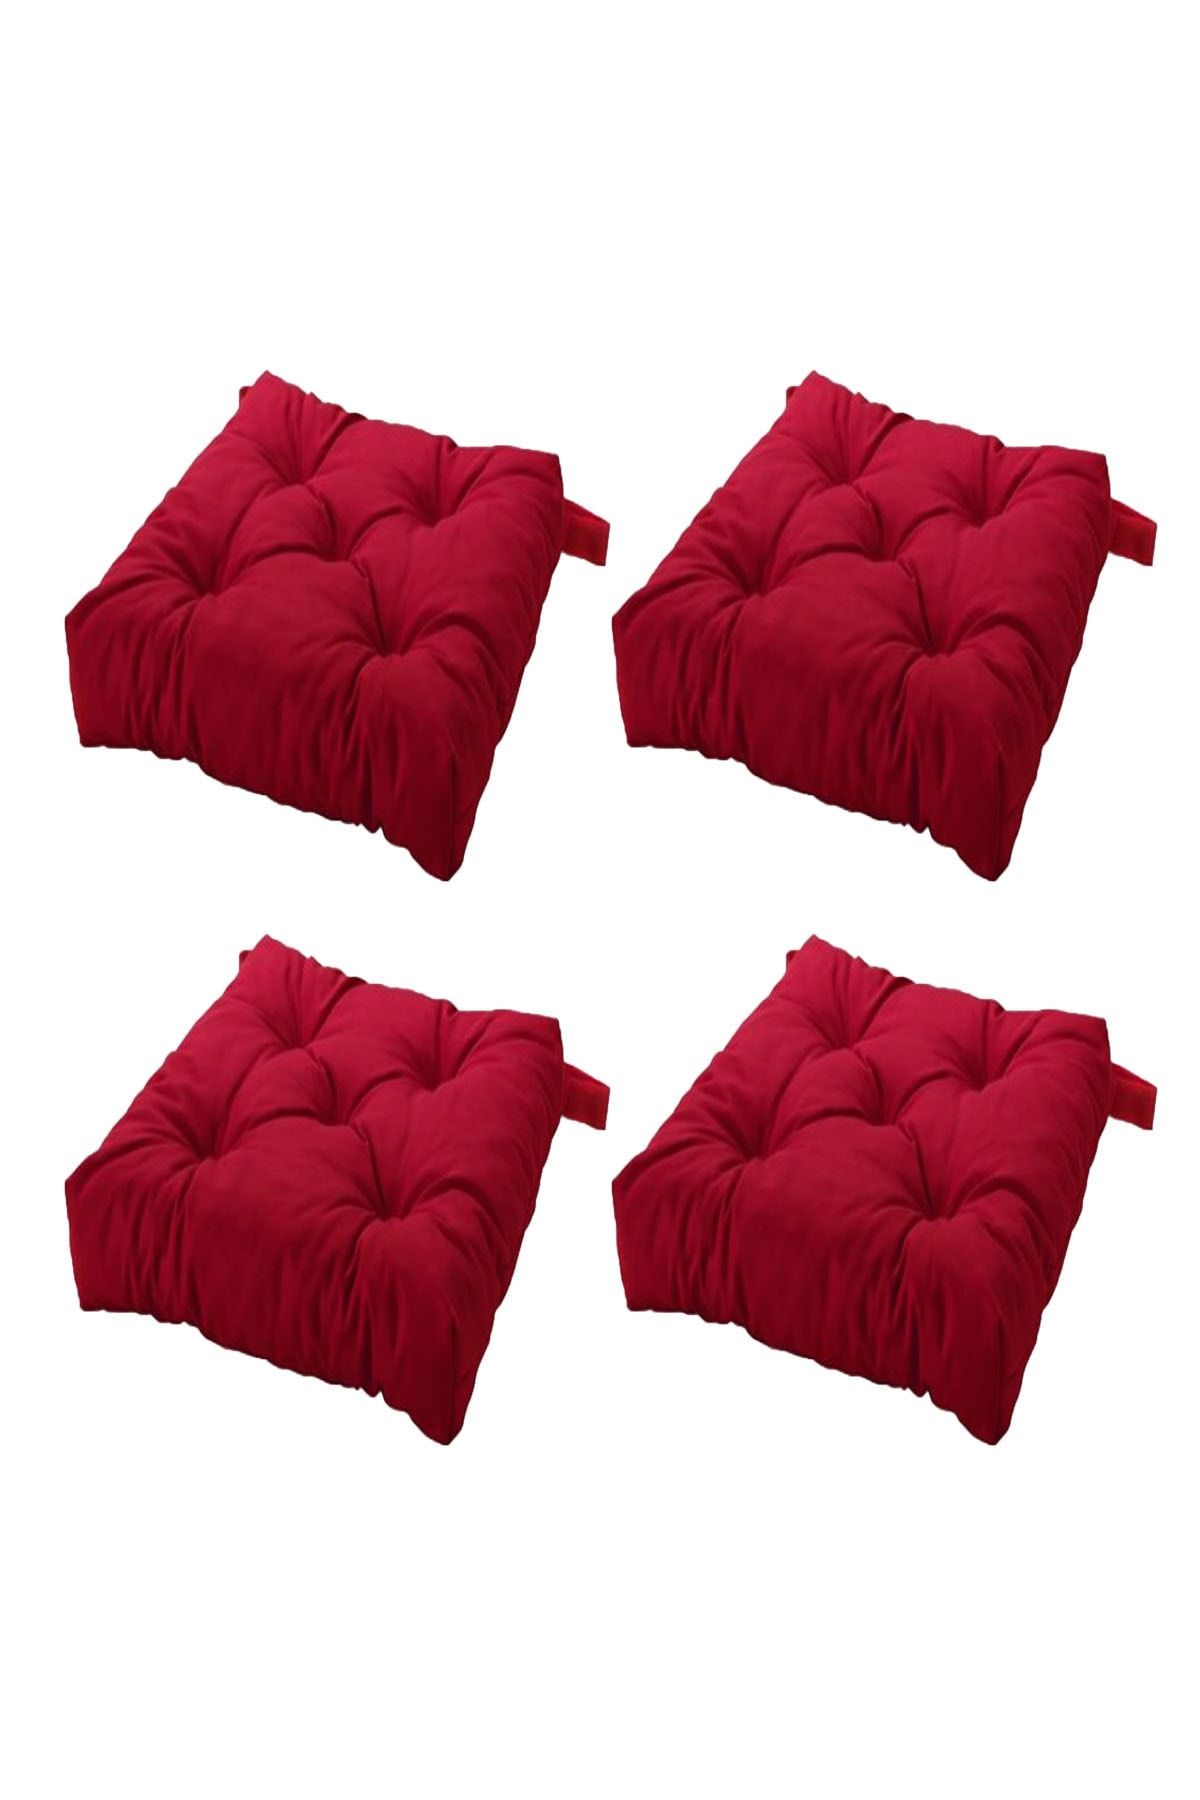 IKEA Malında Sandalye Minderi Kırmızı 40/35x38x7 cm 4 Adet